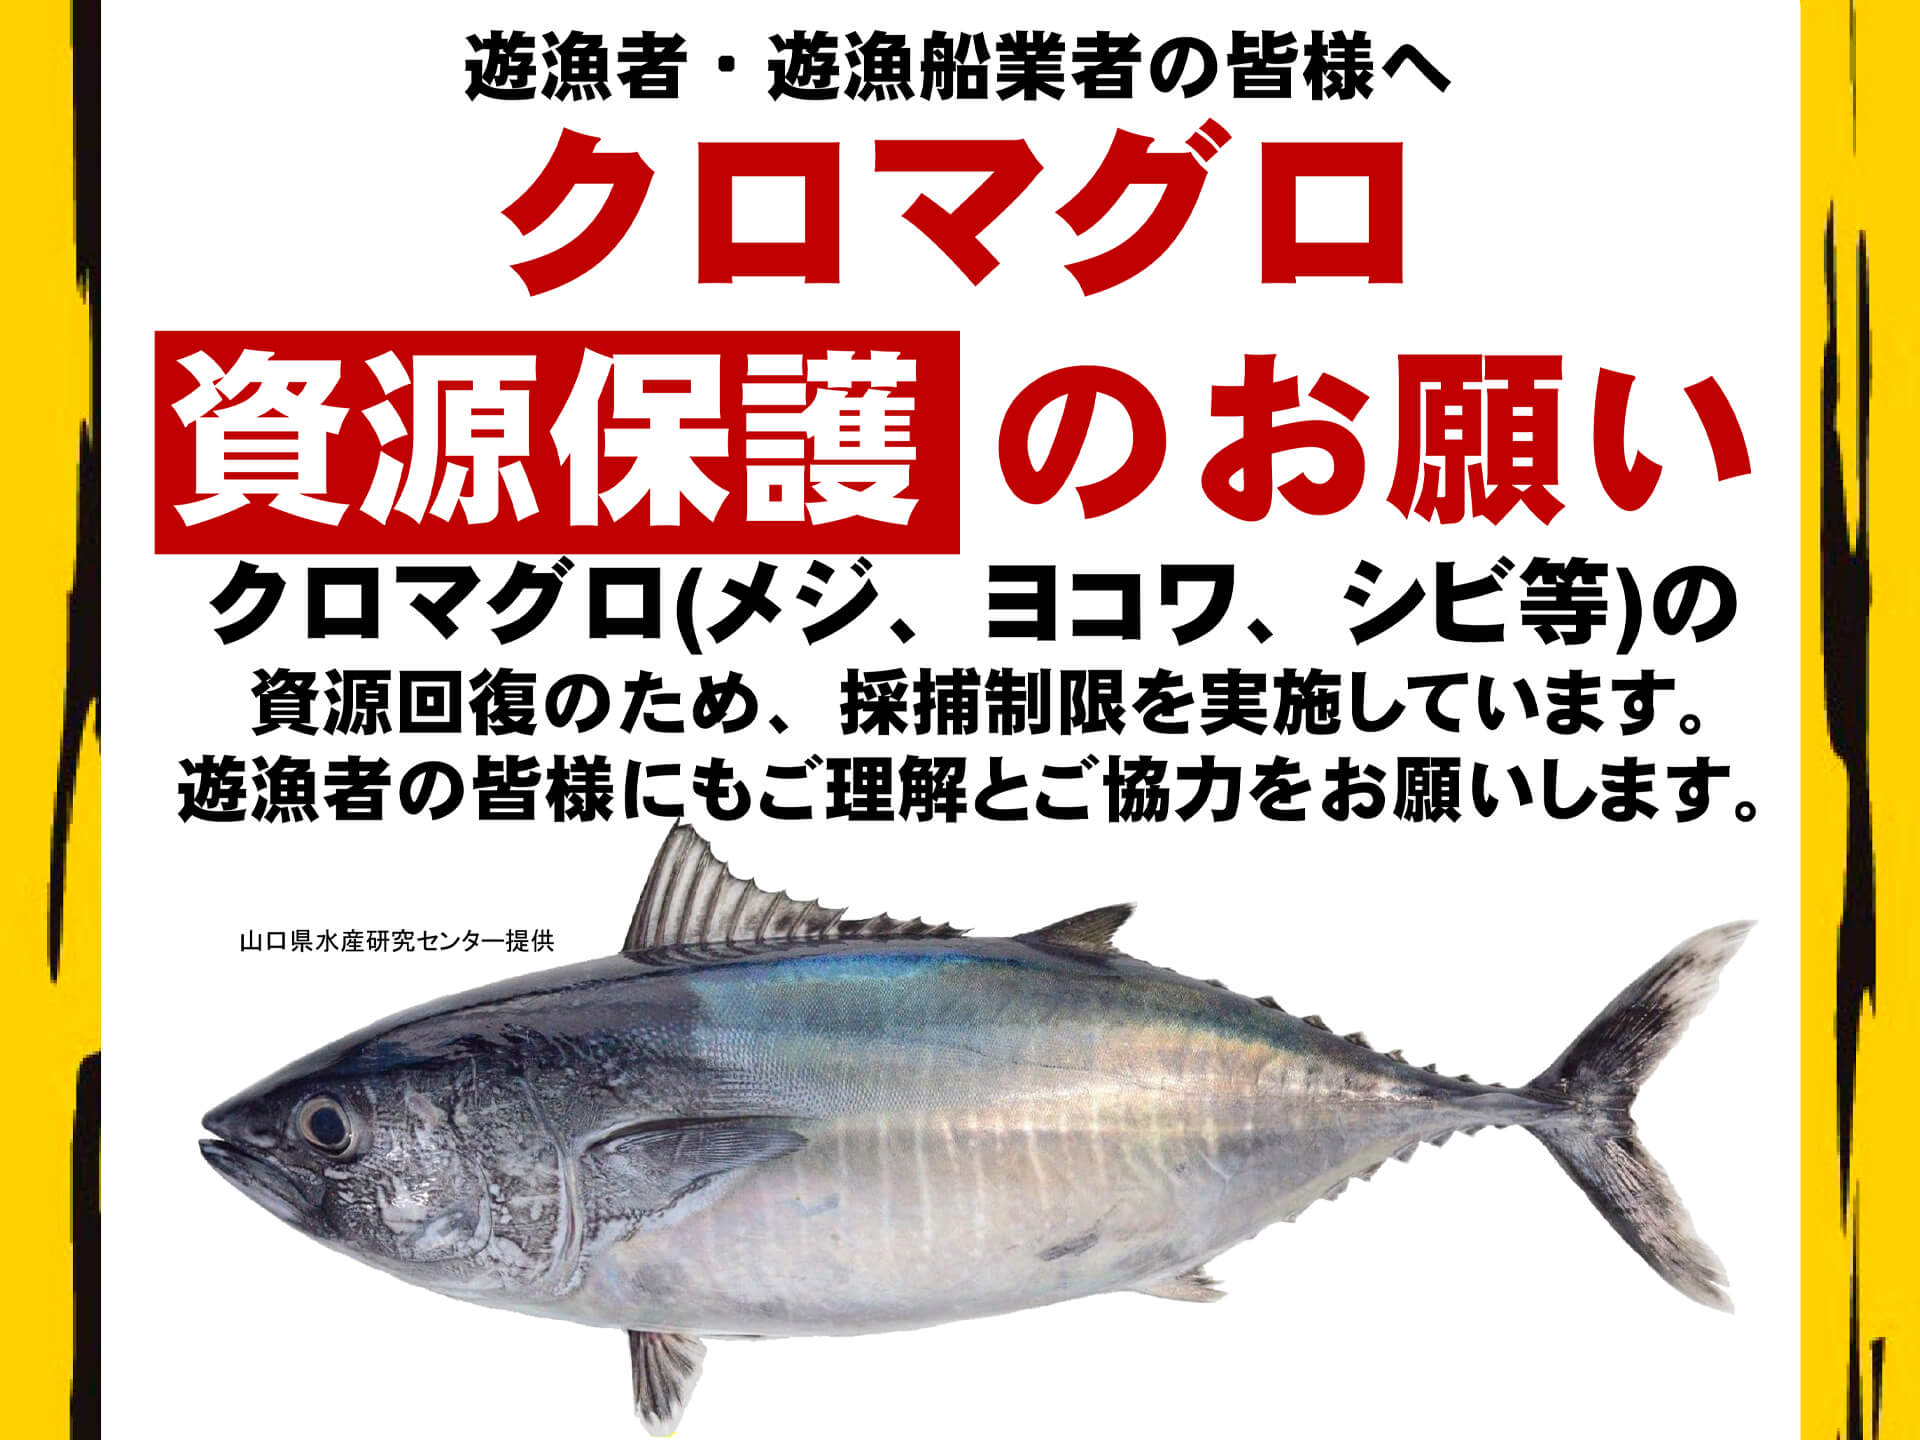 【３月31日まで】クロマグロ遊漁禁止。キャッチ＆リリースを前提とした釣りも禁止、意図せず釣れたら直ちにリリースを